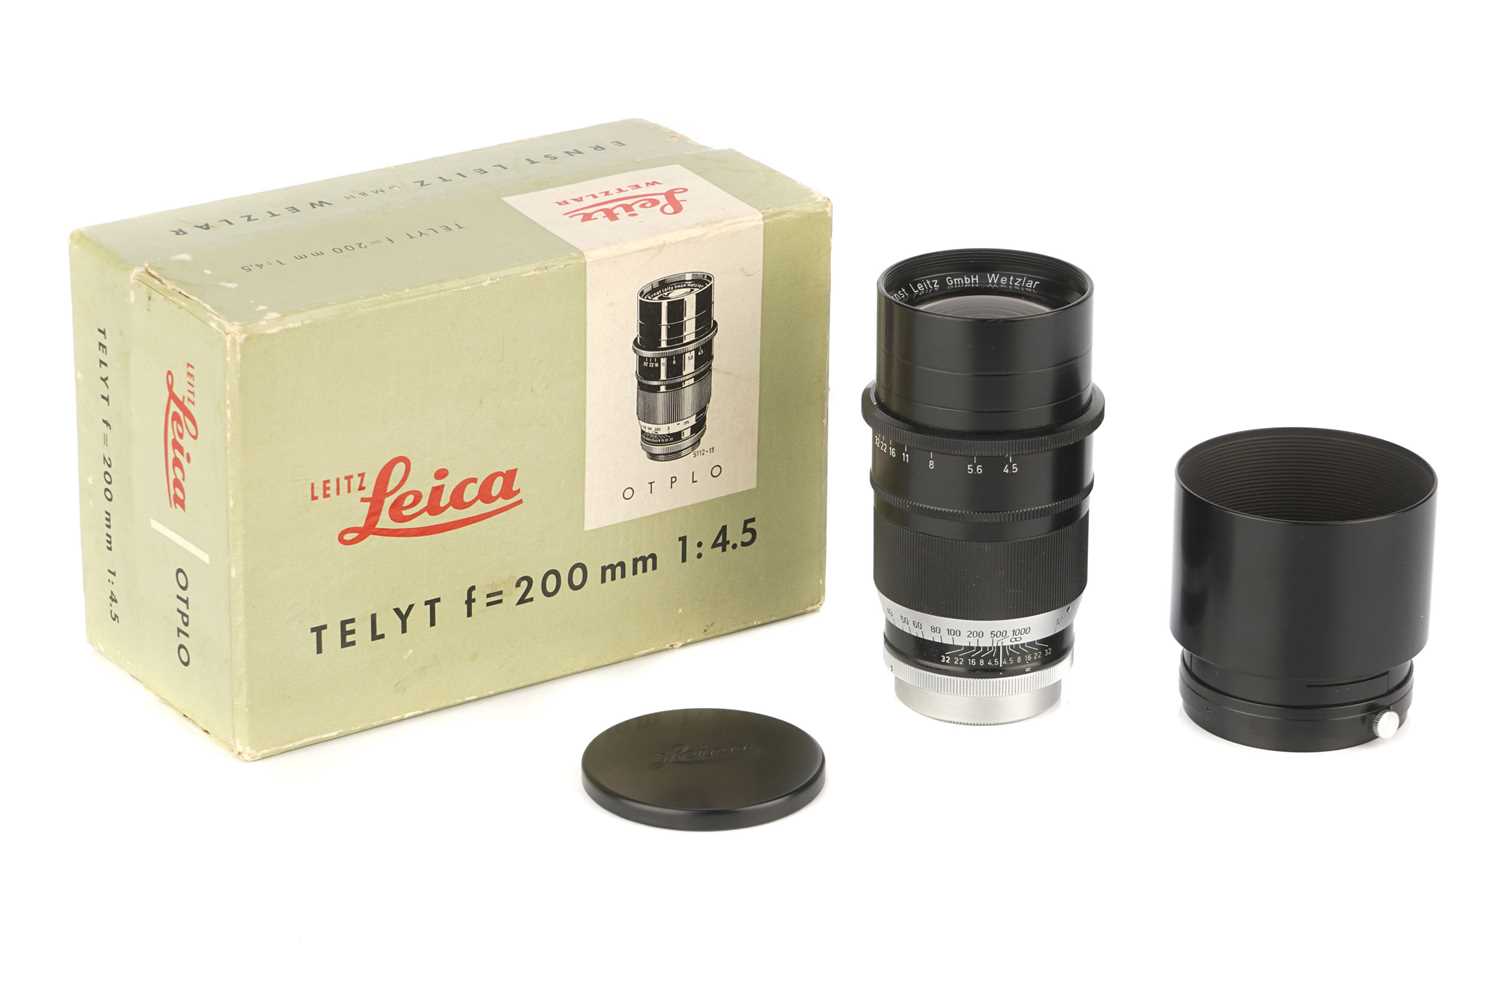 Lot 39 - A Leitz Telyt f/4.5 200mm Lens